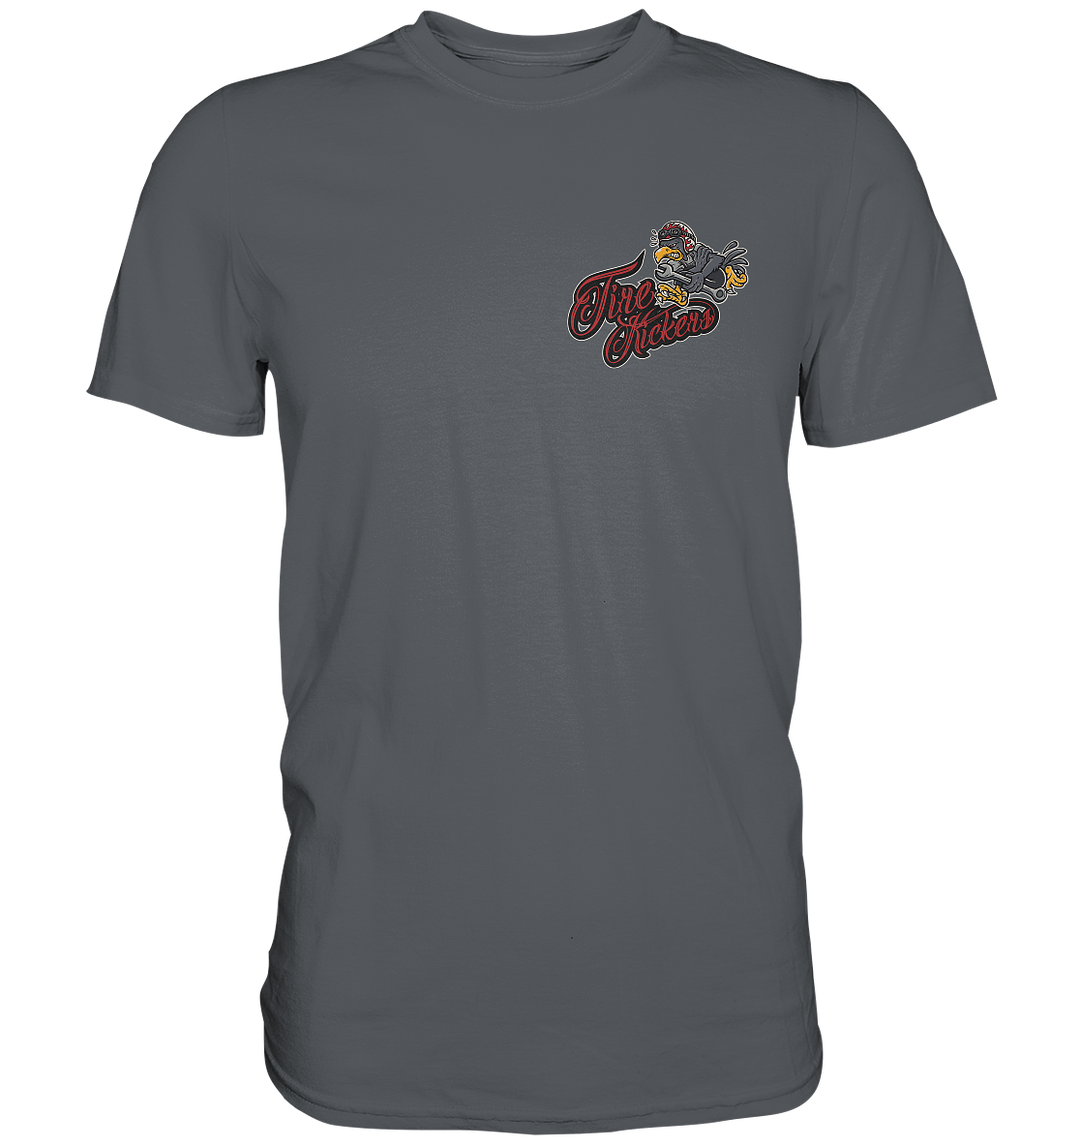 Tirekickers - Grumpy Bird - Premium Shirt